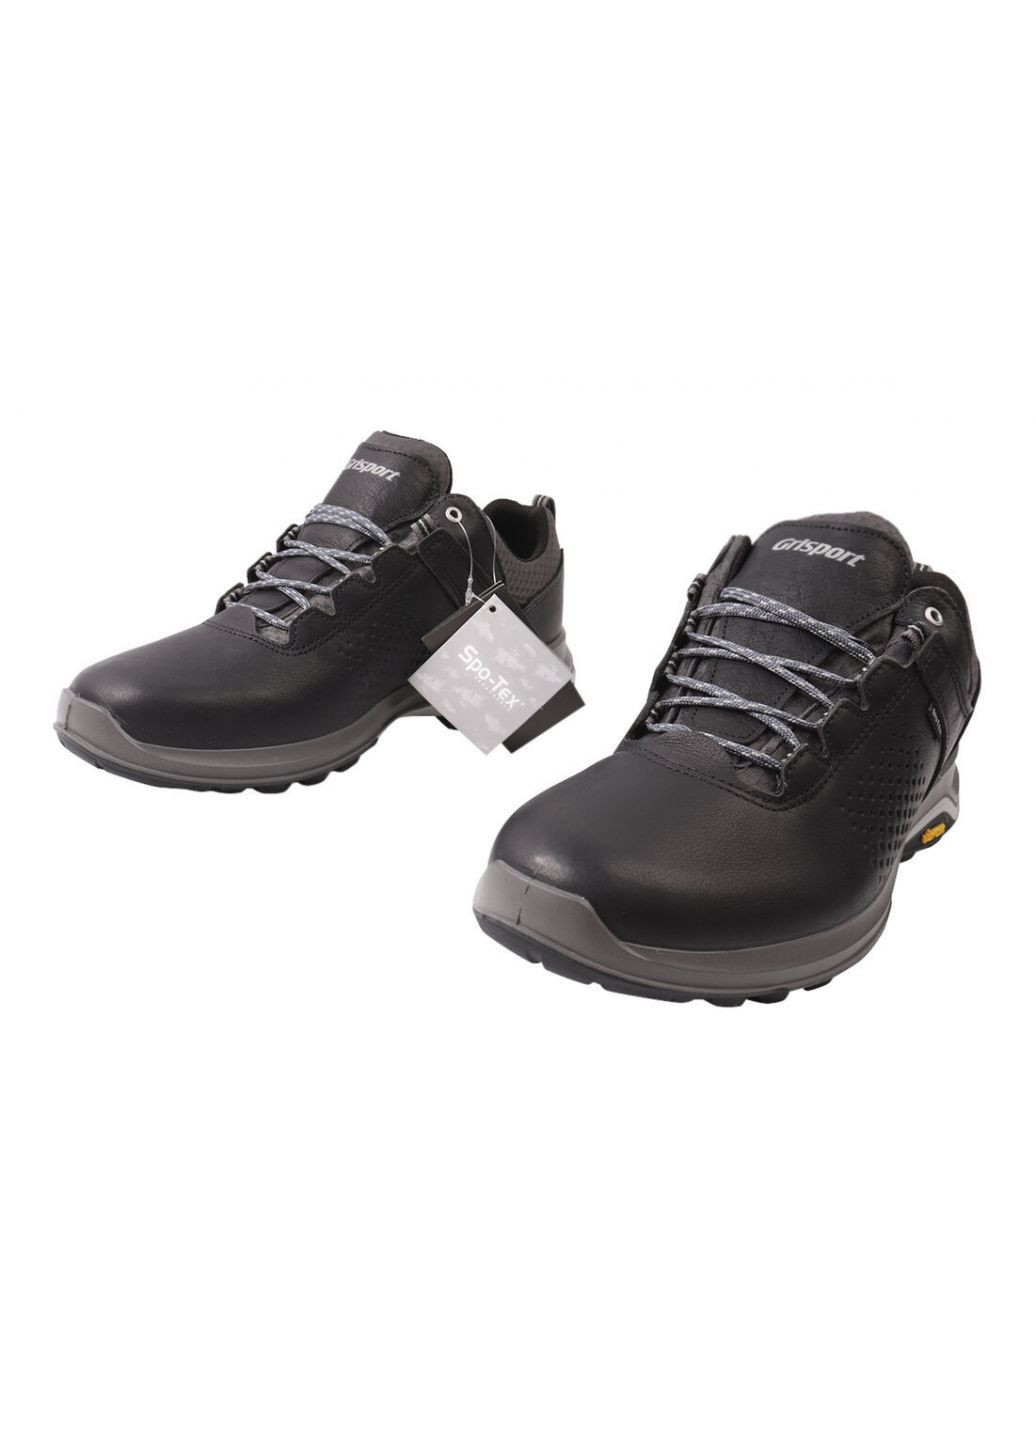 Черные кроссовки мужские из натуральной кожи, на низком ходу, на шнуровке, черные, gri sport Grisport 80-20/23DTS